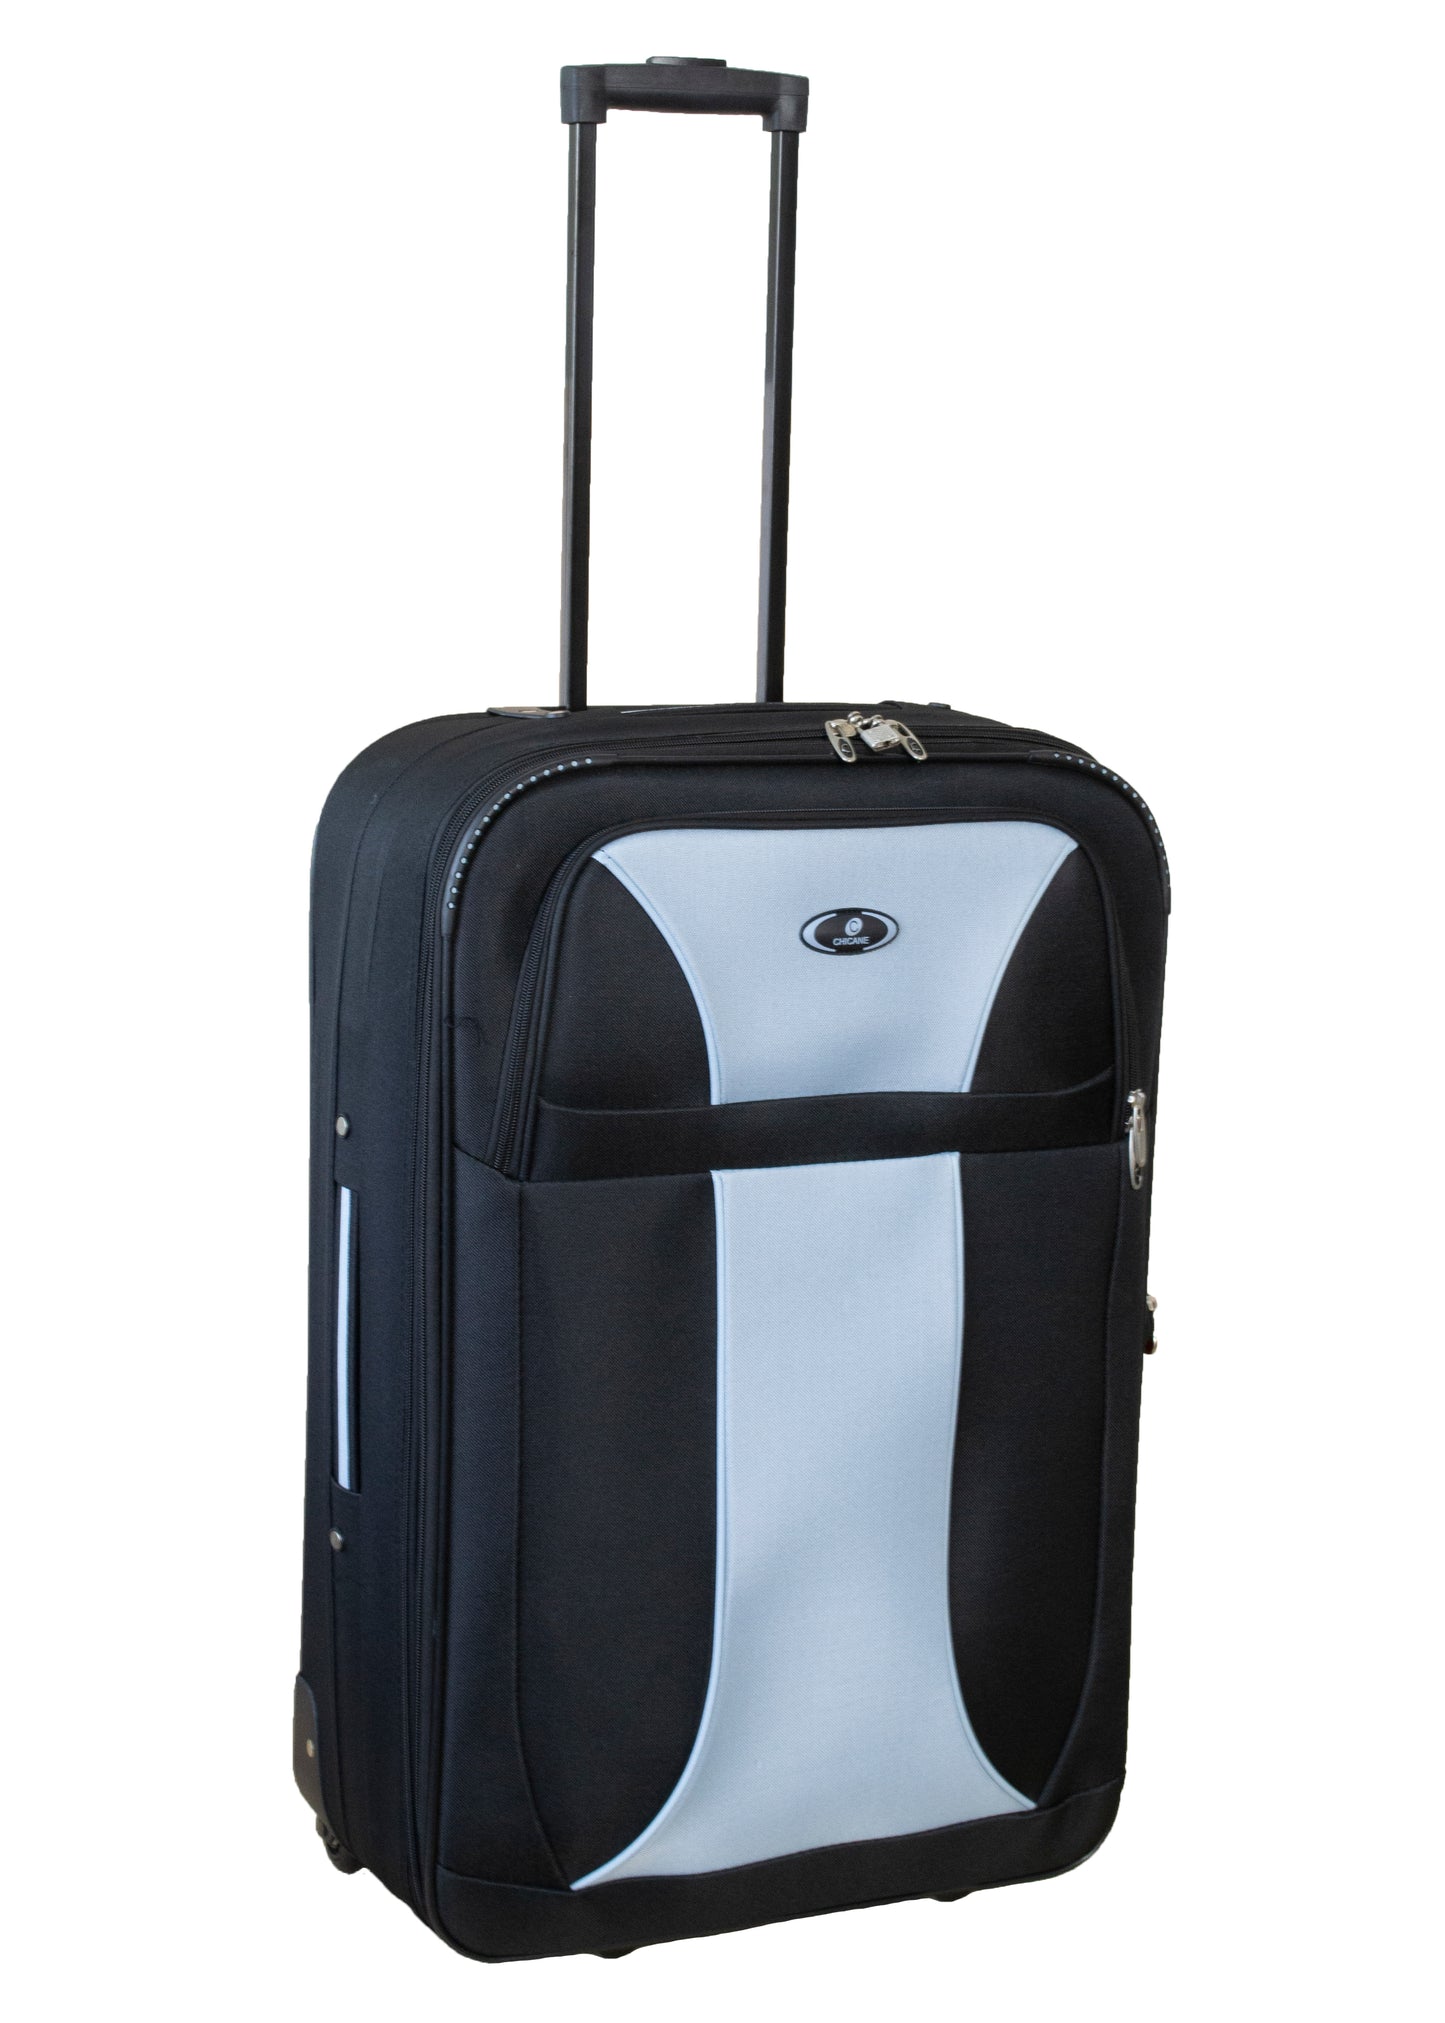 2 Wheels Soft Case Luggage Black-Grey